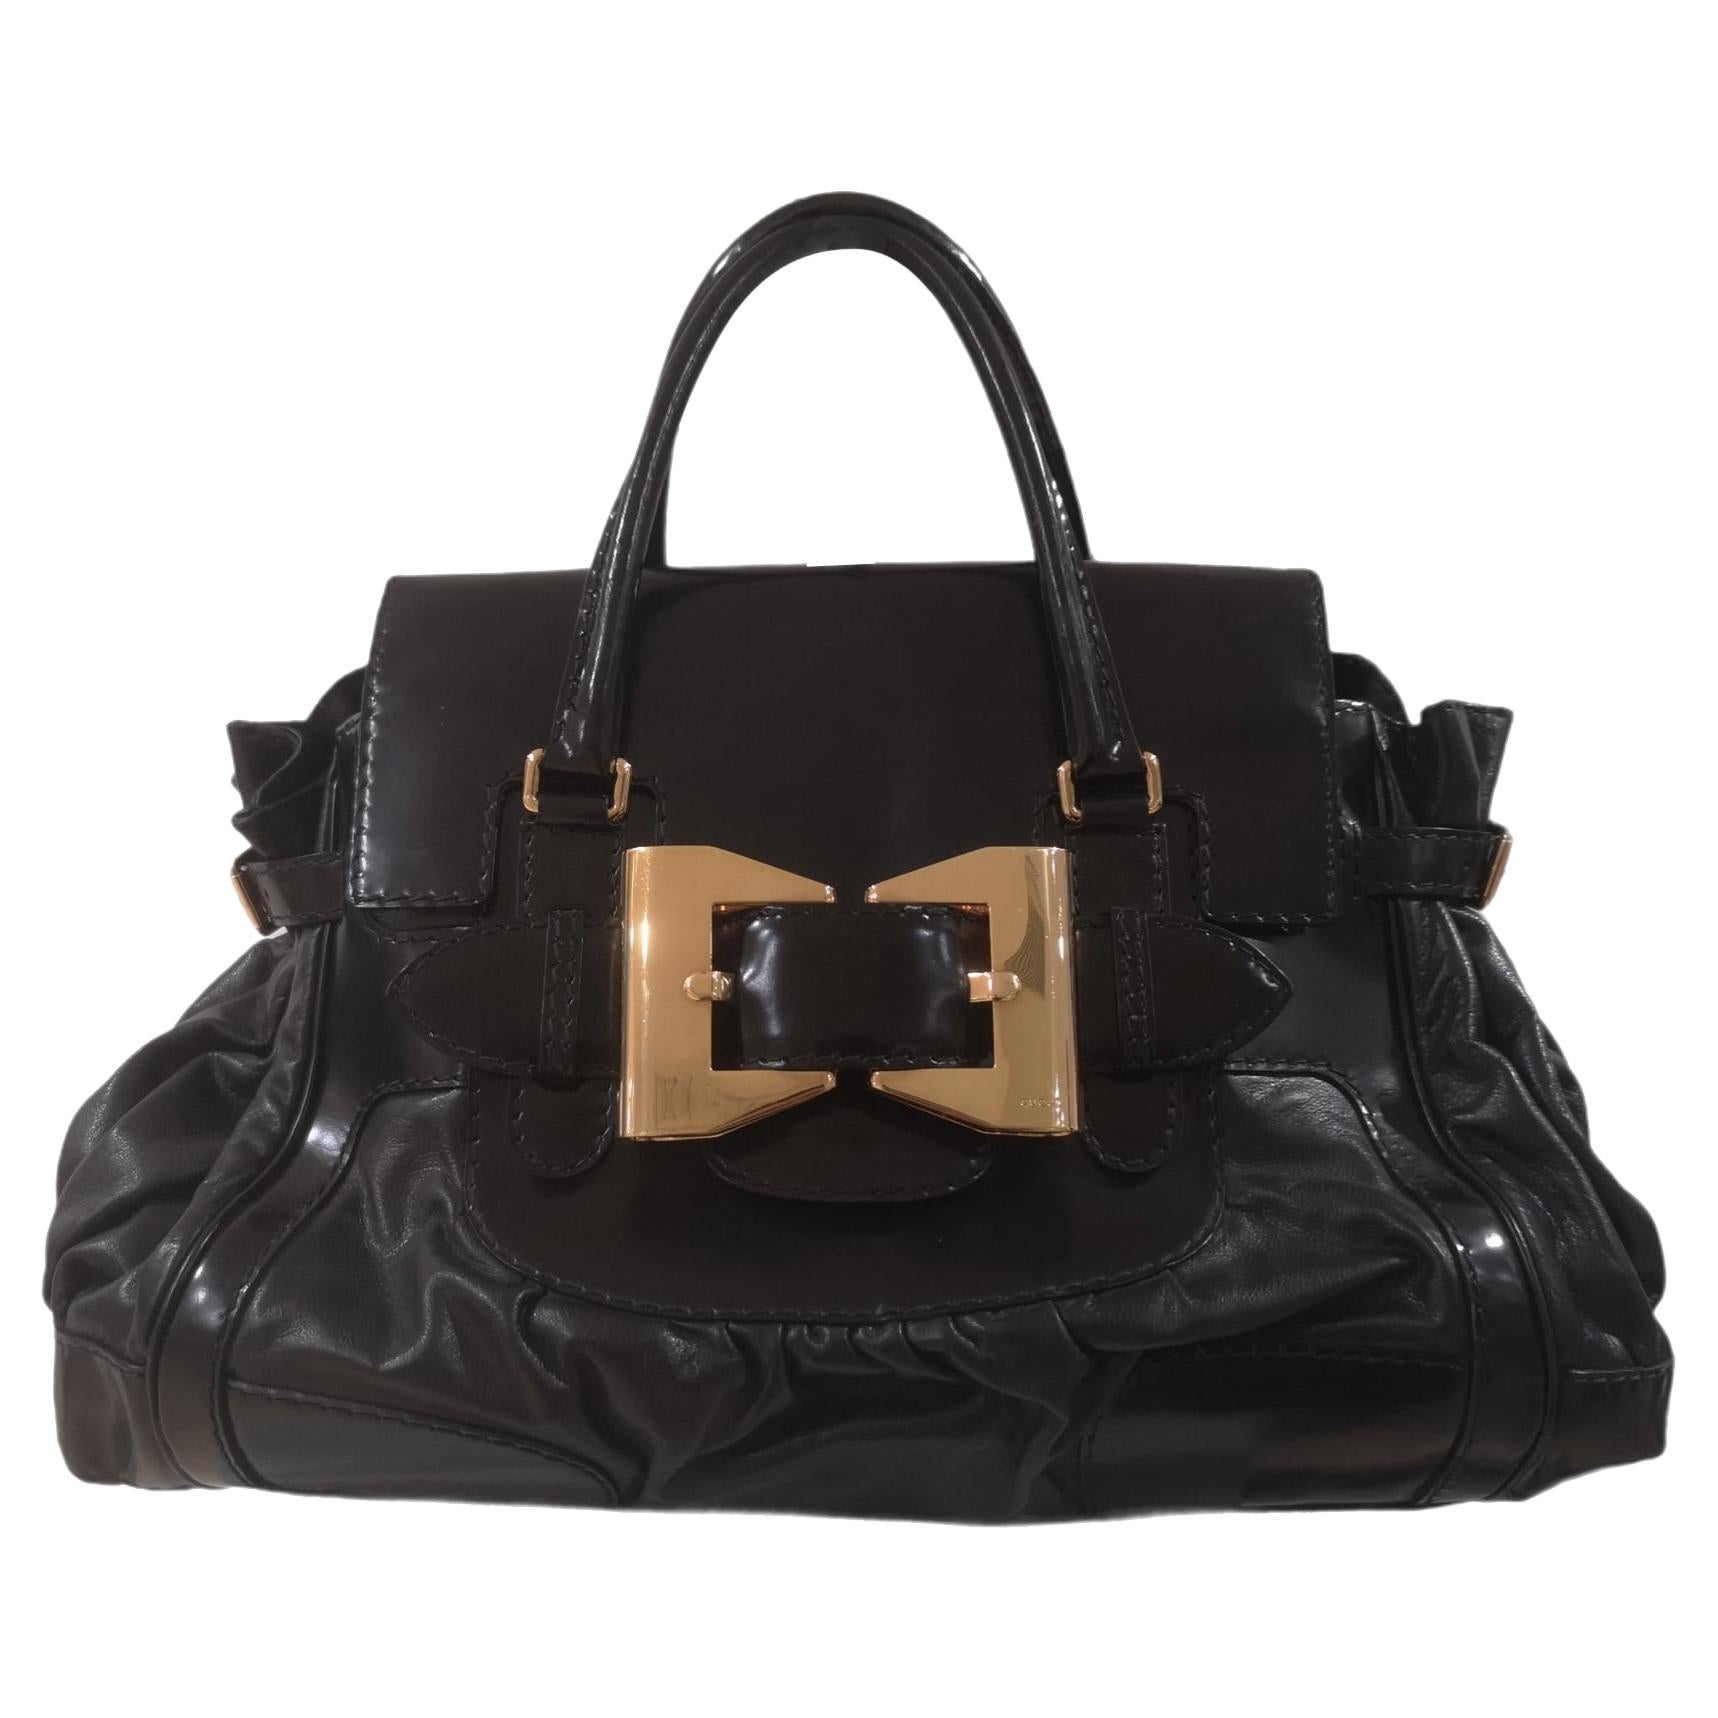 Gucci Black leather gold tone hardware shoulder handle bag